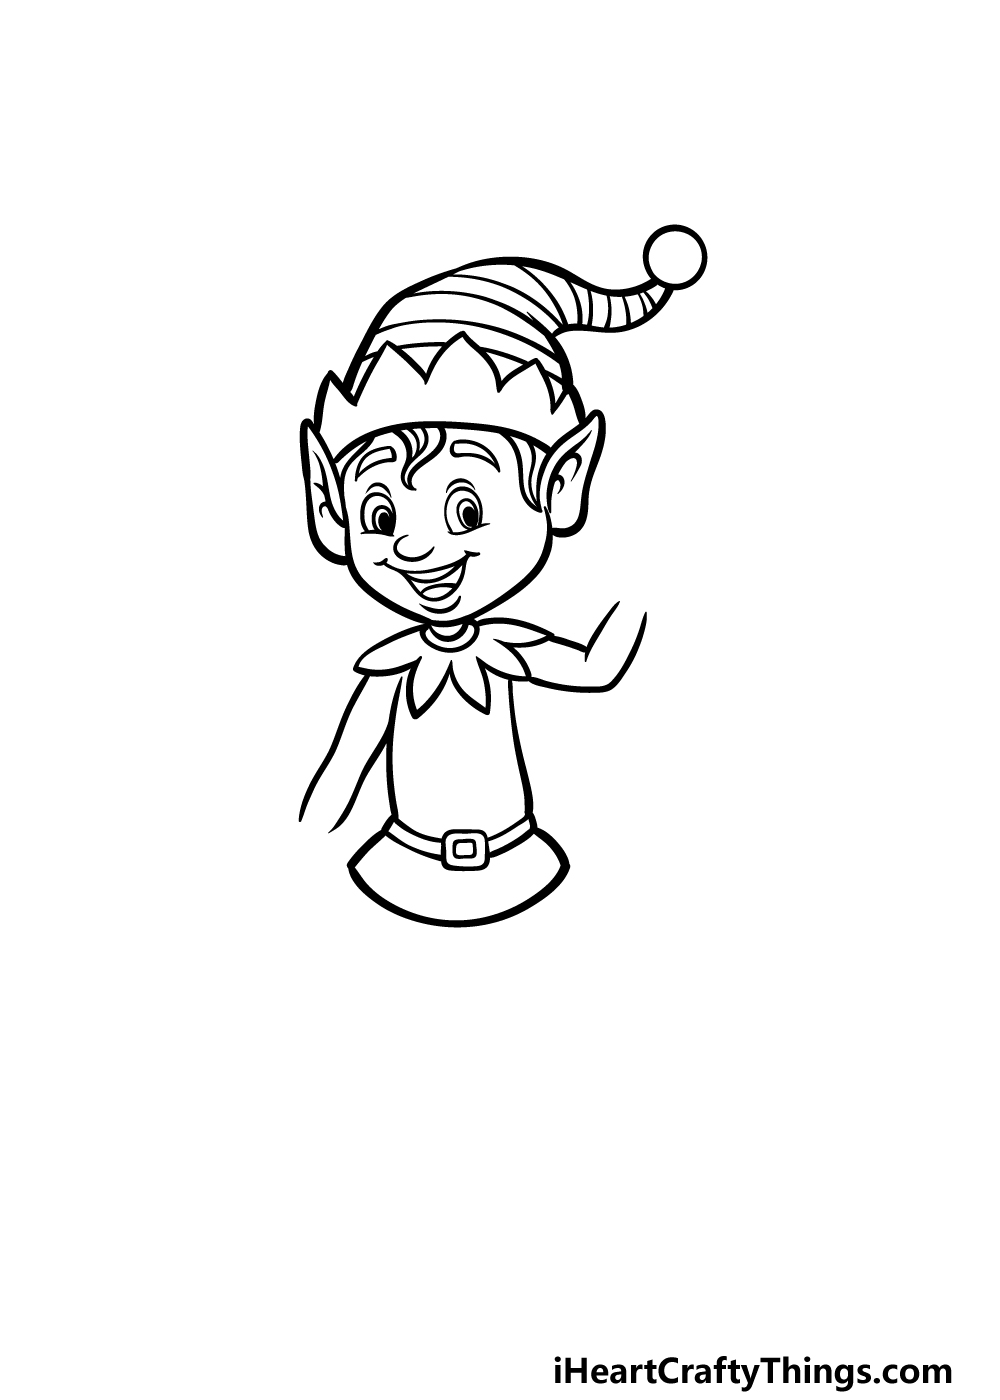 how to draw a cartoon elf step 4